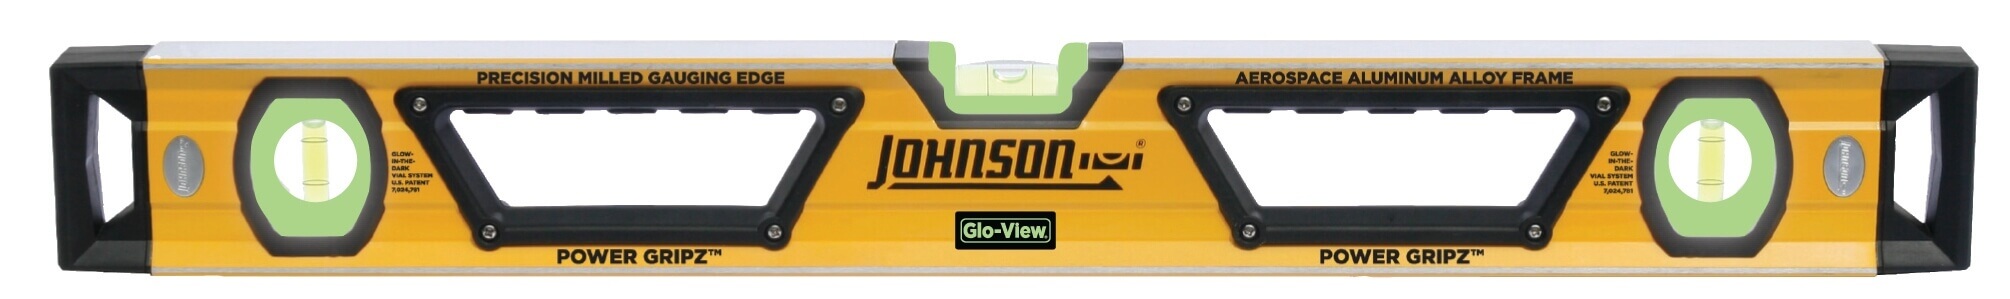 Johnson Level 96 Glo-View Heavy Duty Aluminum Box Level 1717-9600